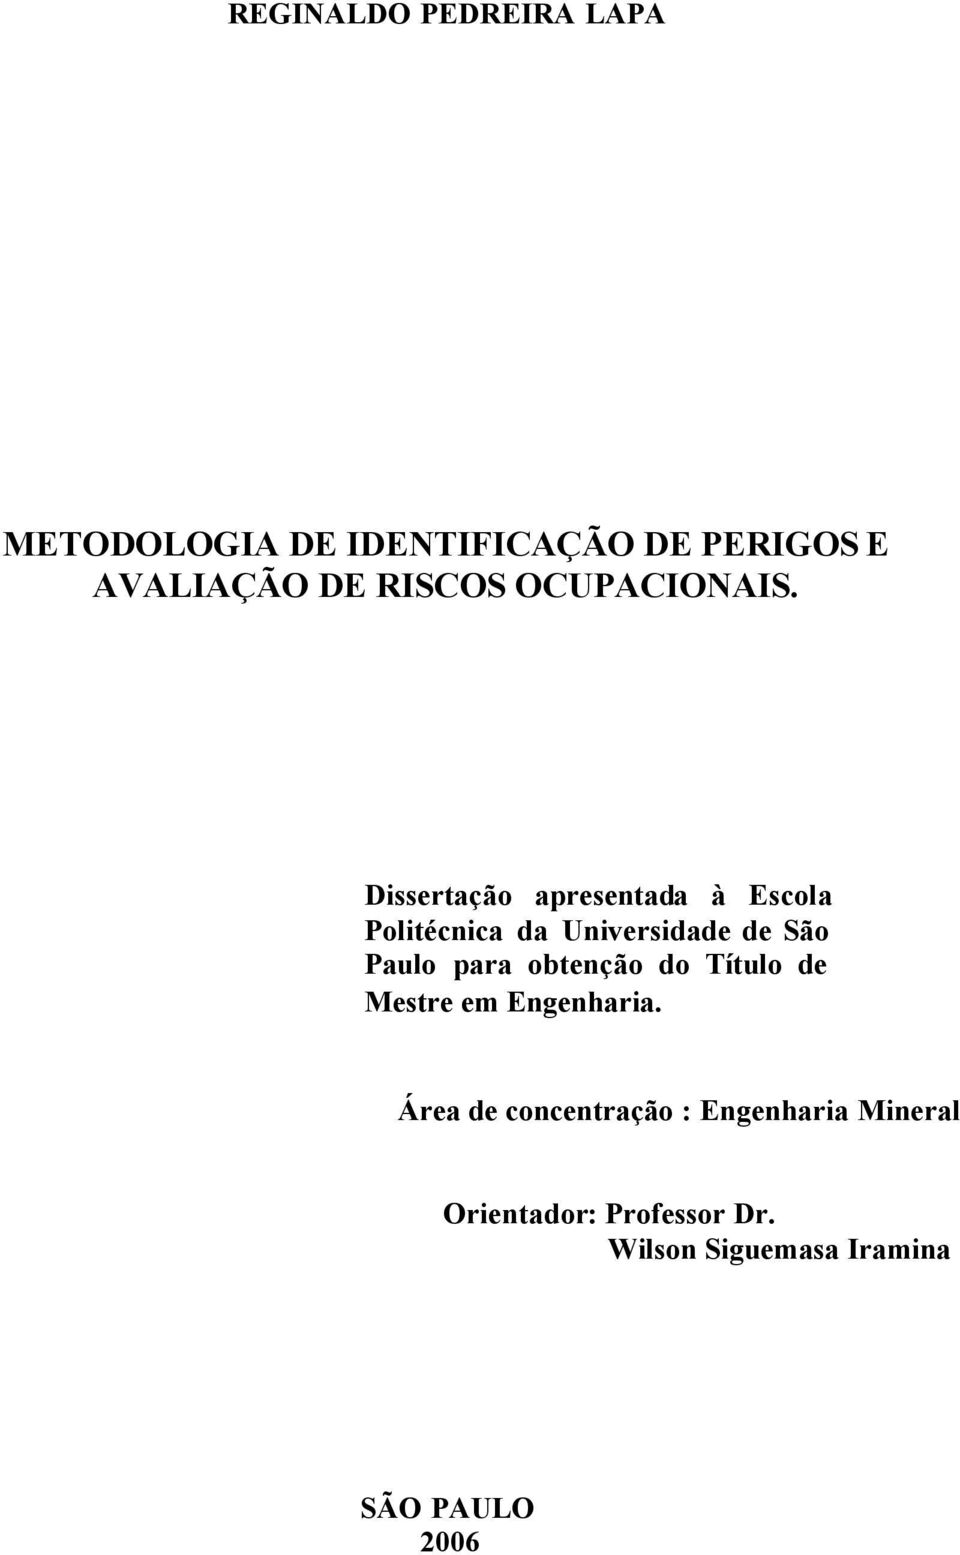 Dissertação apresentada à Escola Politécnica da Universidade de São Paulo para